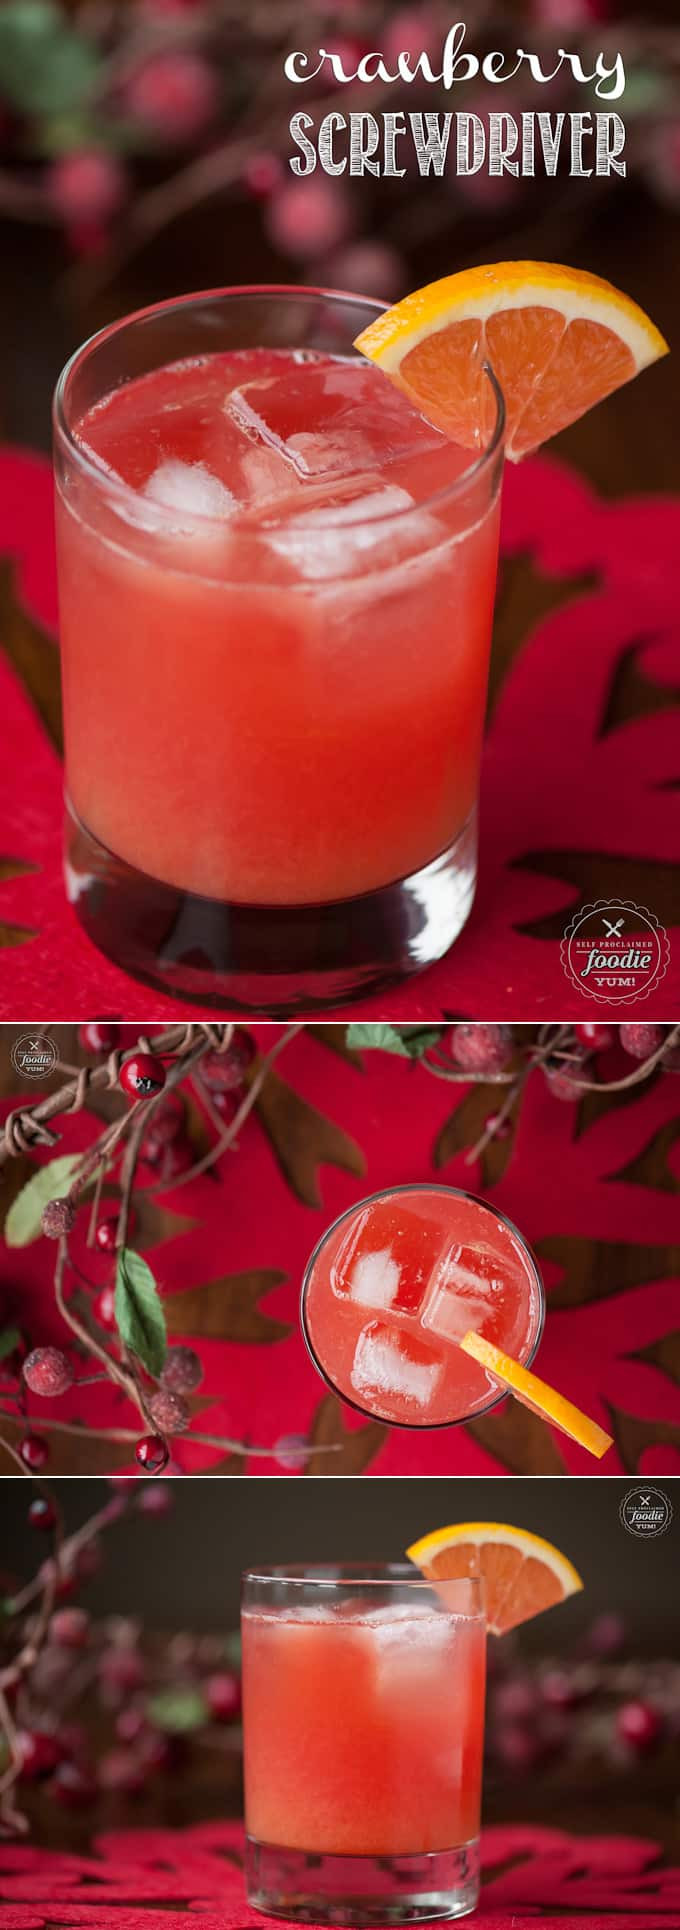 Cranberry Vodka Cocktails Recipes
 Cranberry Screwdriver